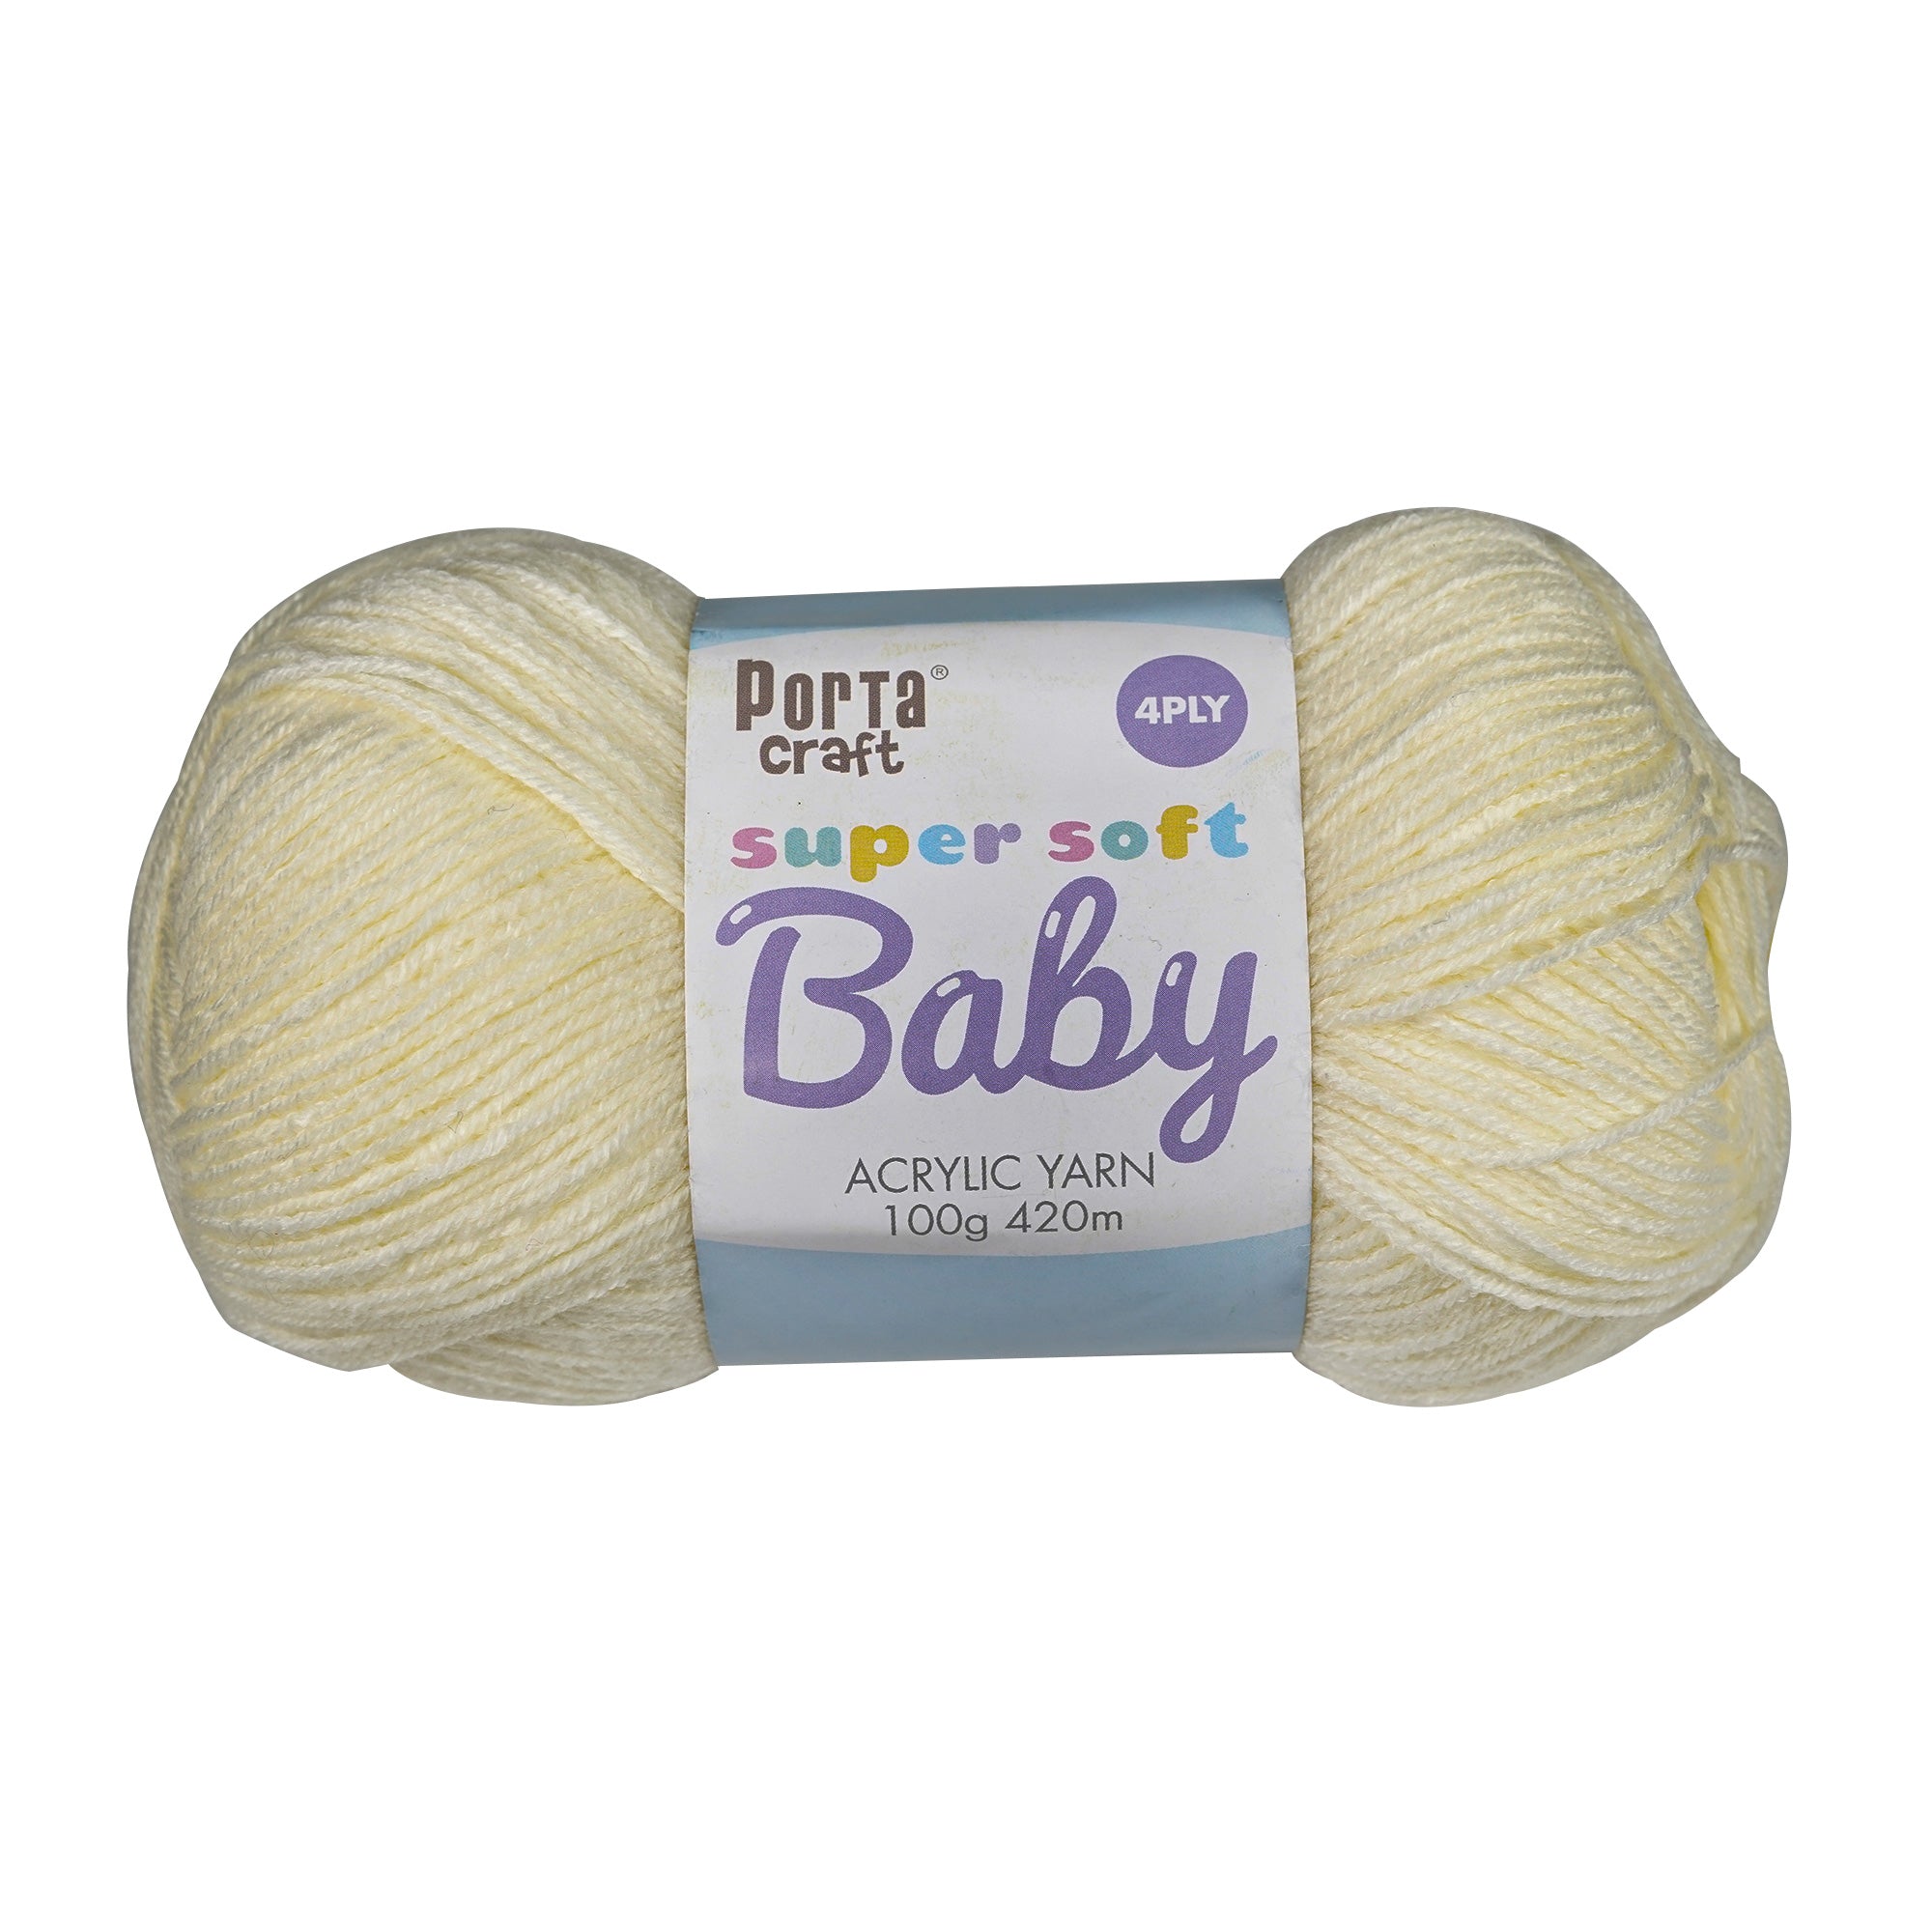 Porta Craft Super Soft Baby Acrylic Yarn 100% 100Gm 420M 4Ply Cream